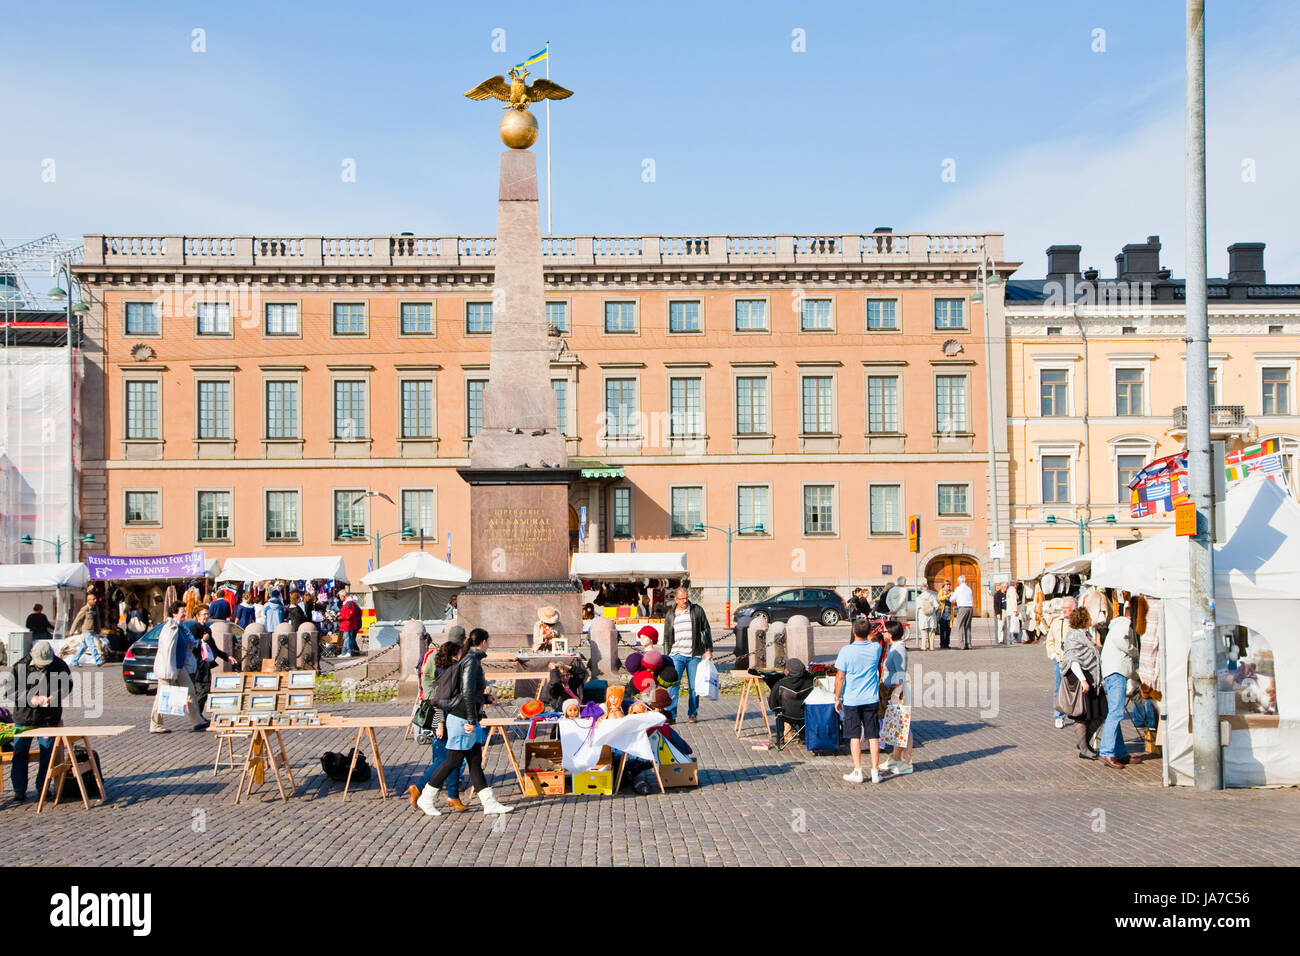 HELSINKI - settembre,7: Piazza del Mercato e la poppa obelisco della imperatrice Alexandra a Helsinki in Finlandia il 7 settembre 2011. Il monumento è stato eretto nel 1835 in onore della visita dello zar Nikolai I e l'imperatrice Alexandra, che a riva a gradino qui. Foto Stock